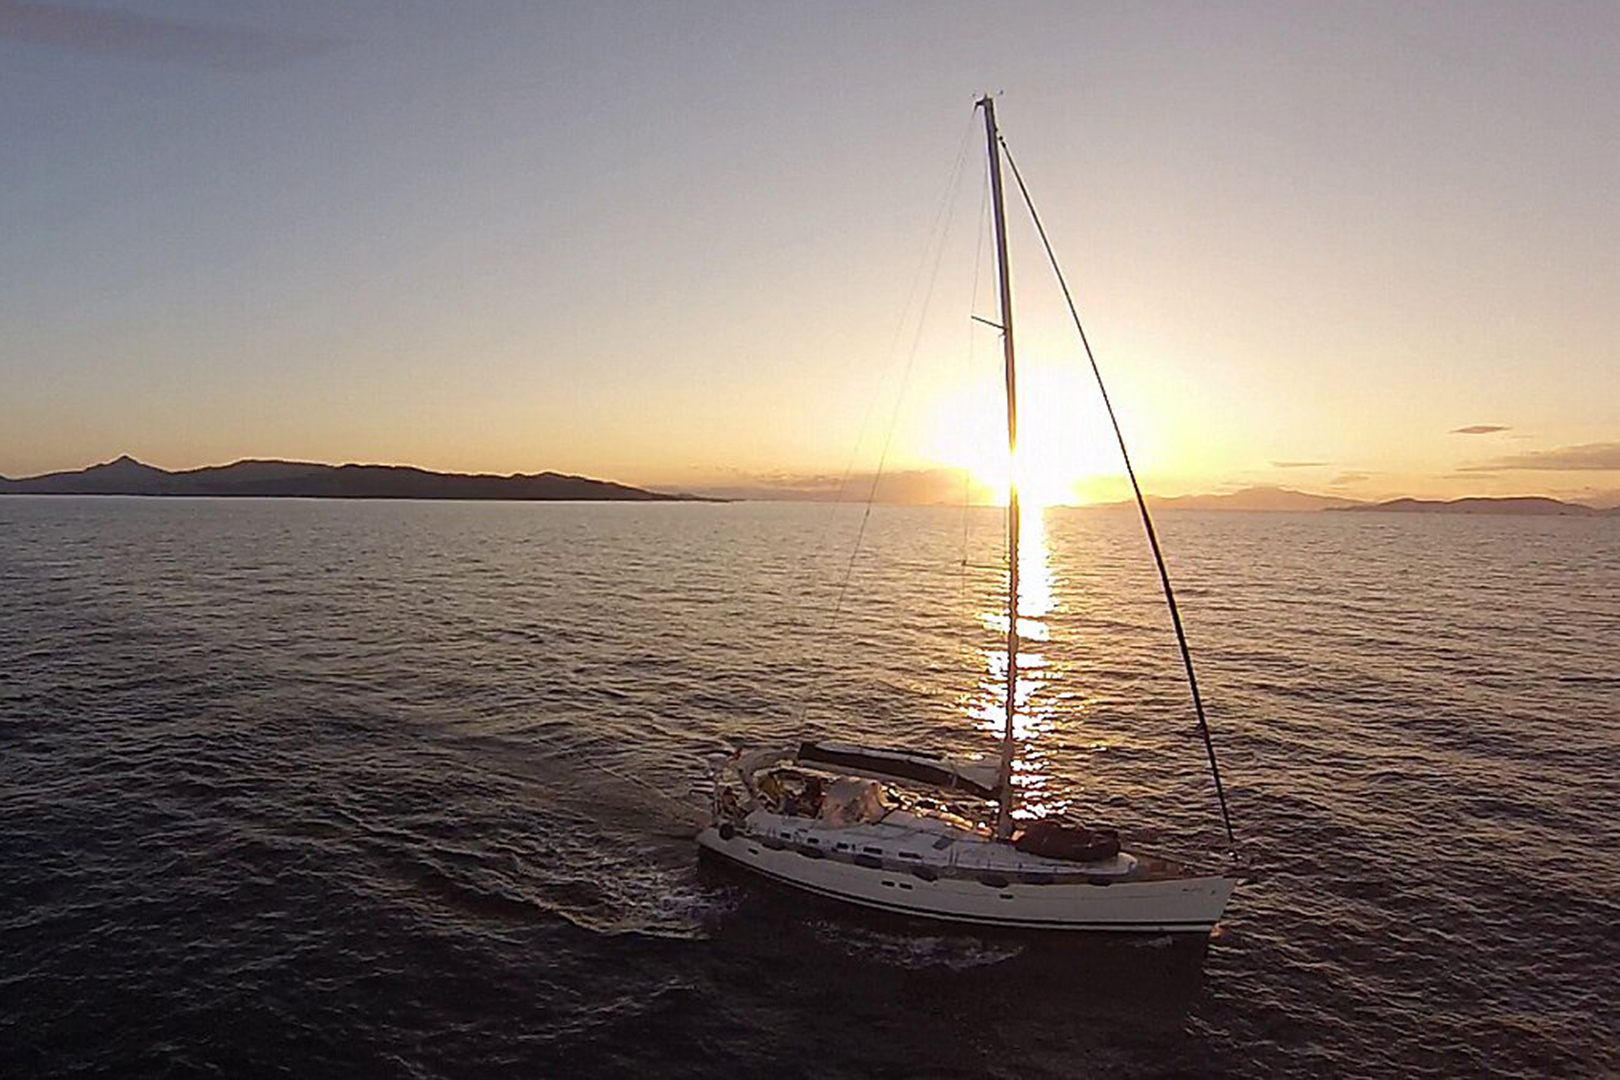 luxury-sailing-yacht-Malena-sunset-view